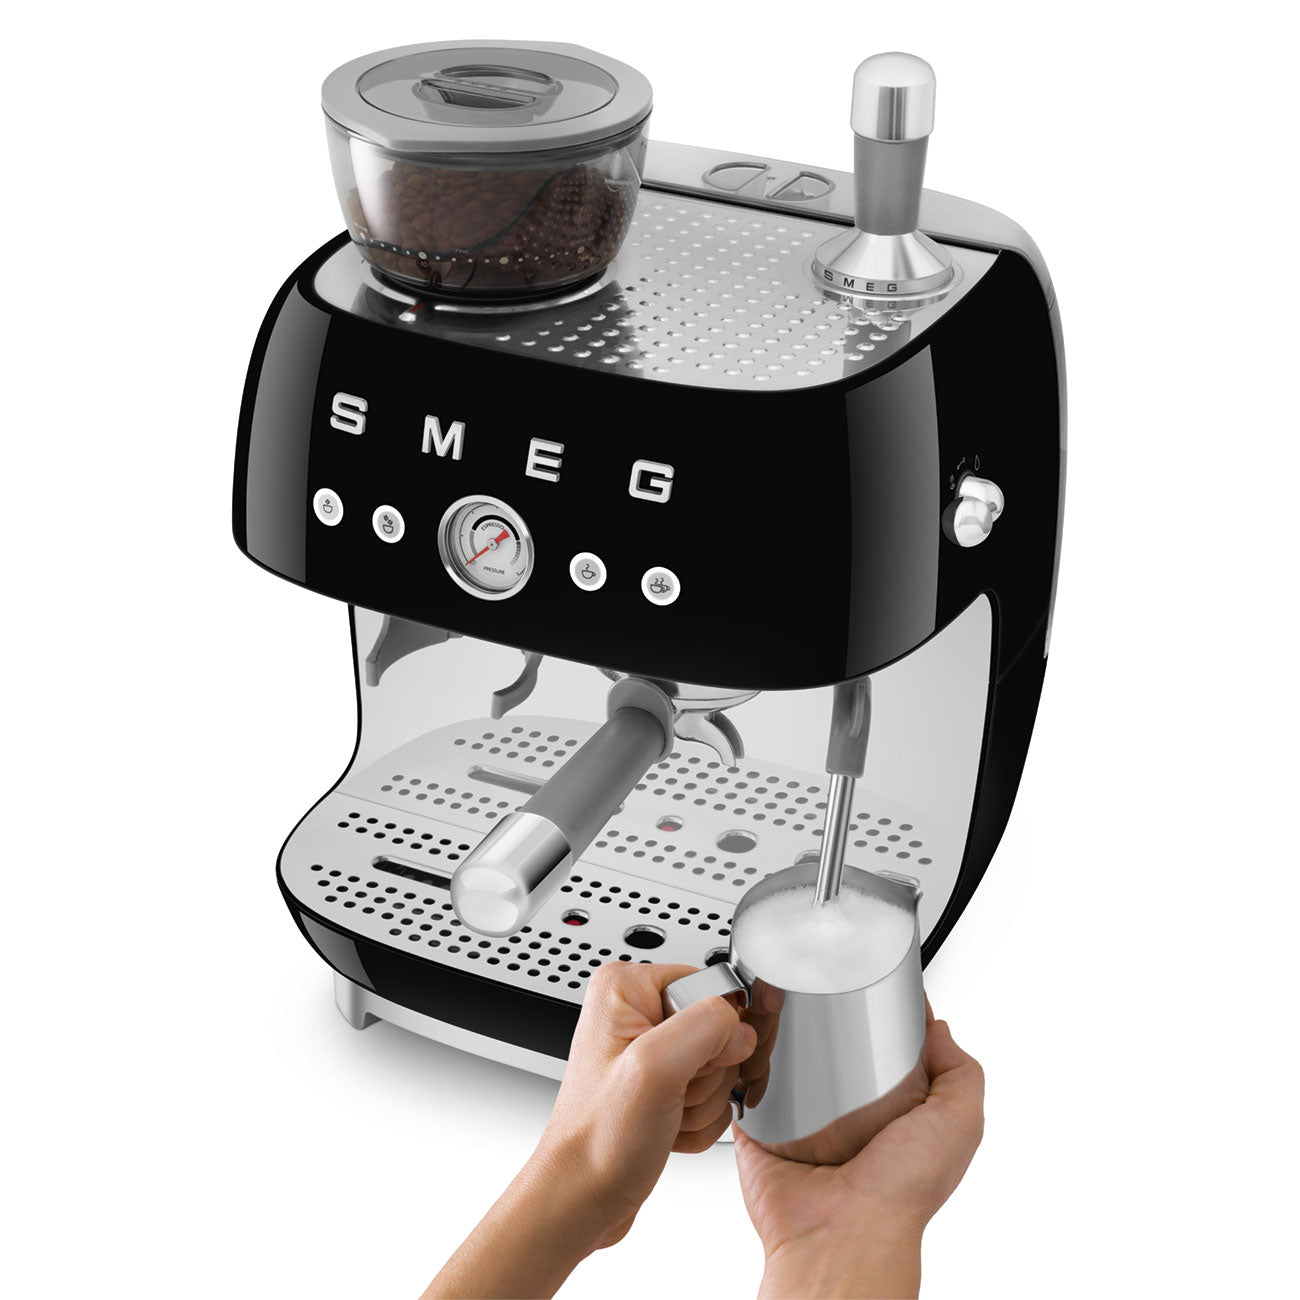 Smeg 2.4L Black Espresso Coffee Machine EGF03BLEU